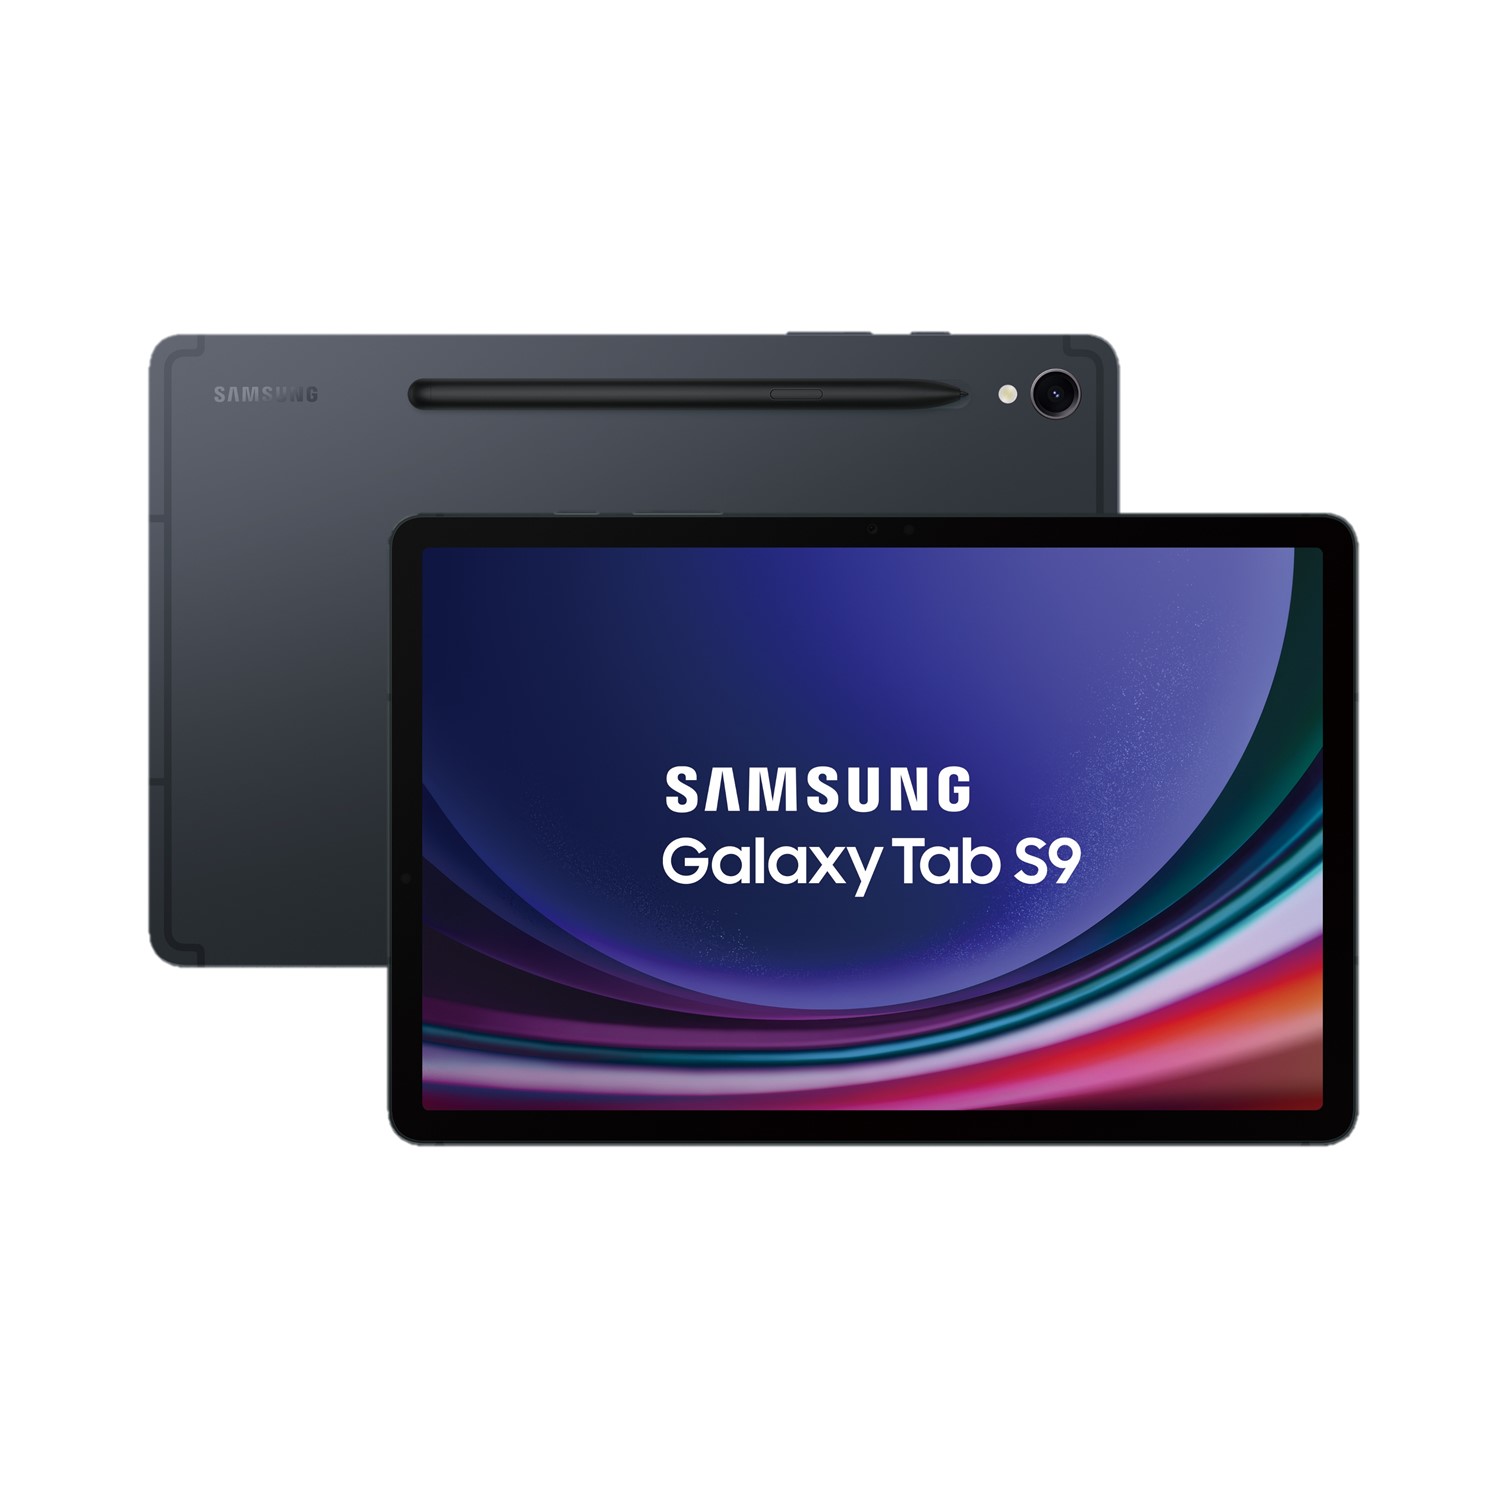 2年保固組 | SAMSUNG Galaxy Tab S9 WIFI 8G/128G 黑耀灰